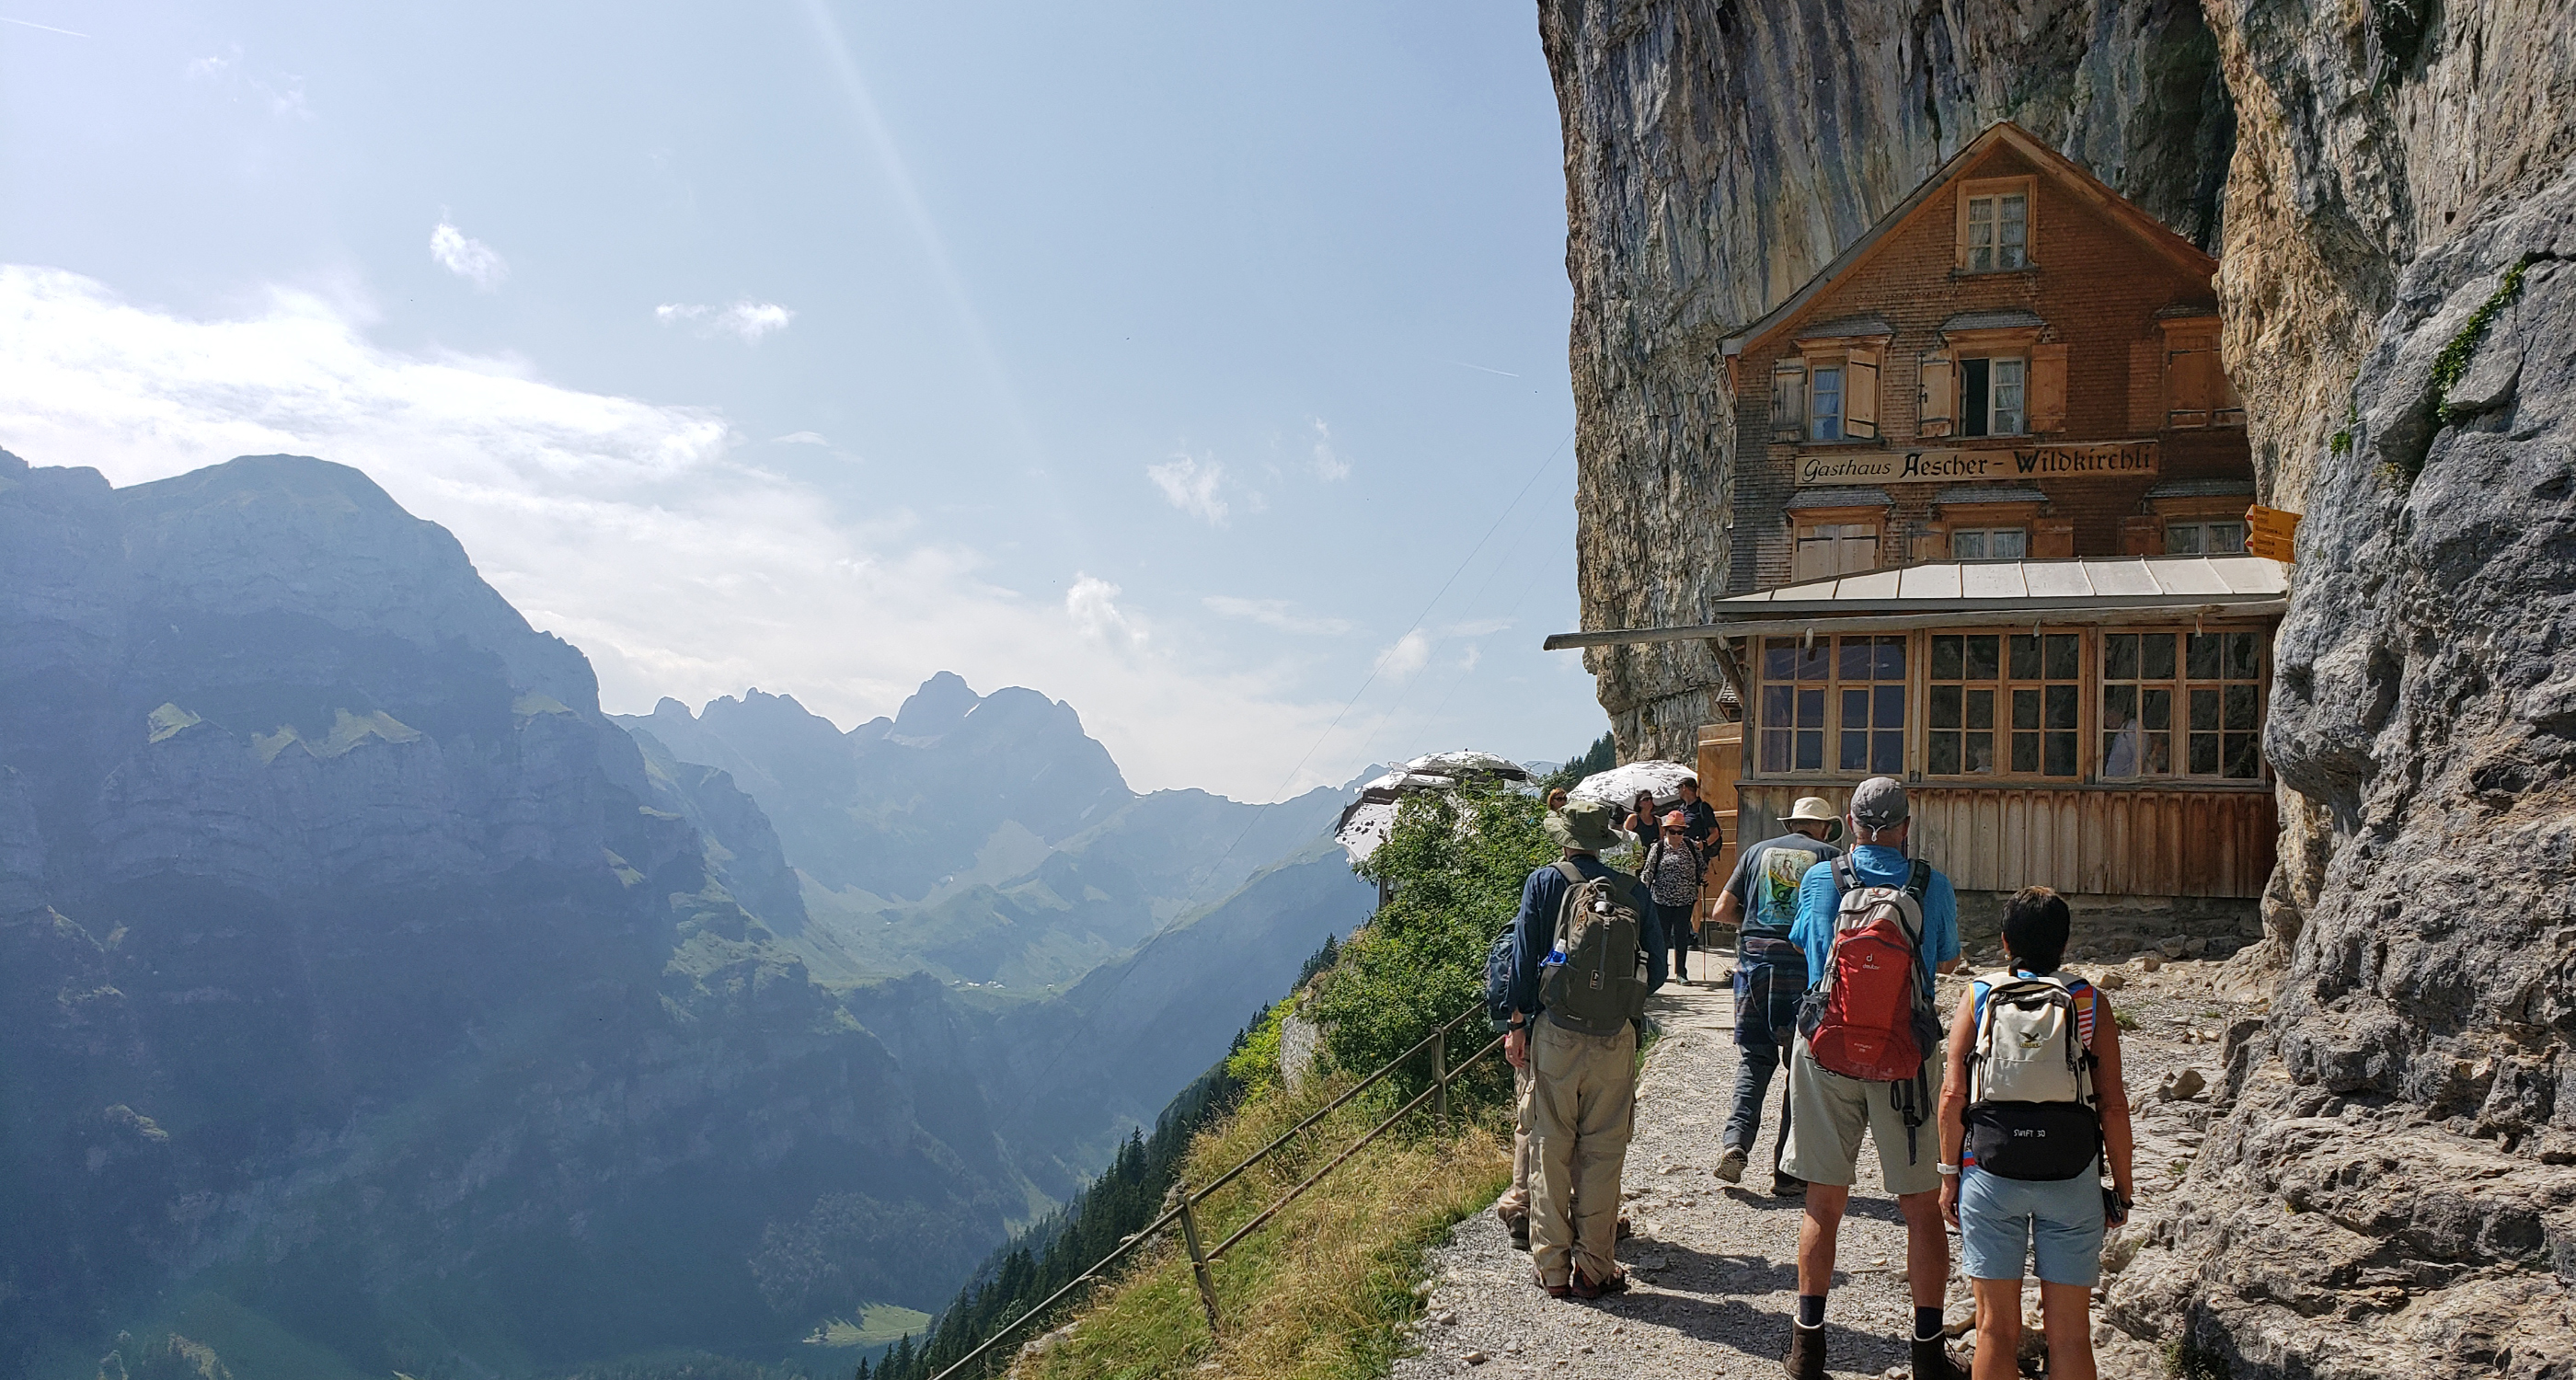 Travelers visit Aescher Wildkirchli in Wasserauen, Switzerland